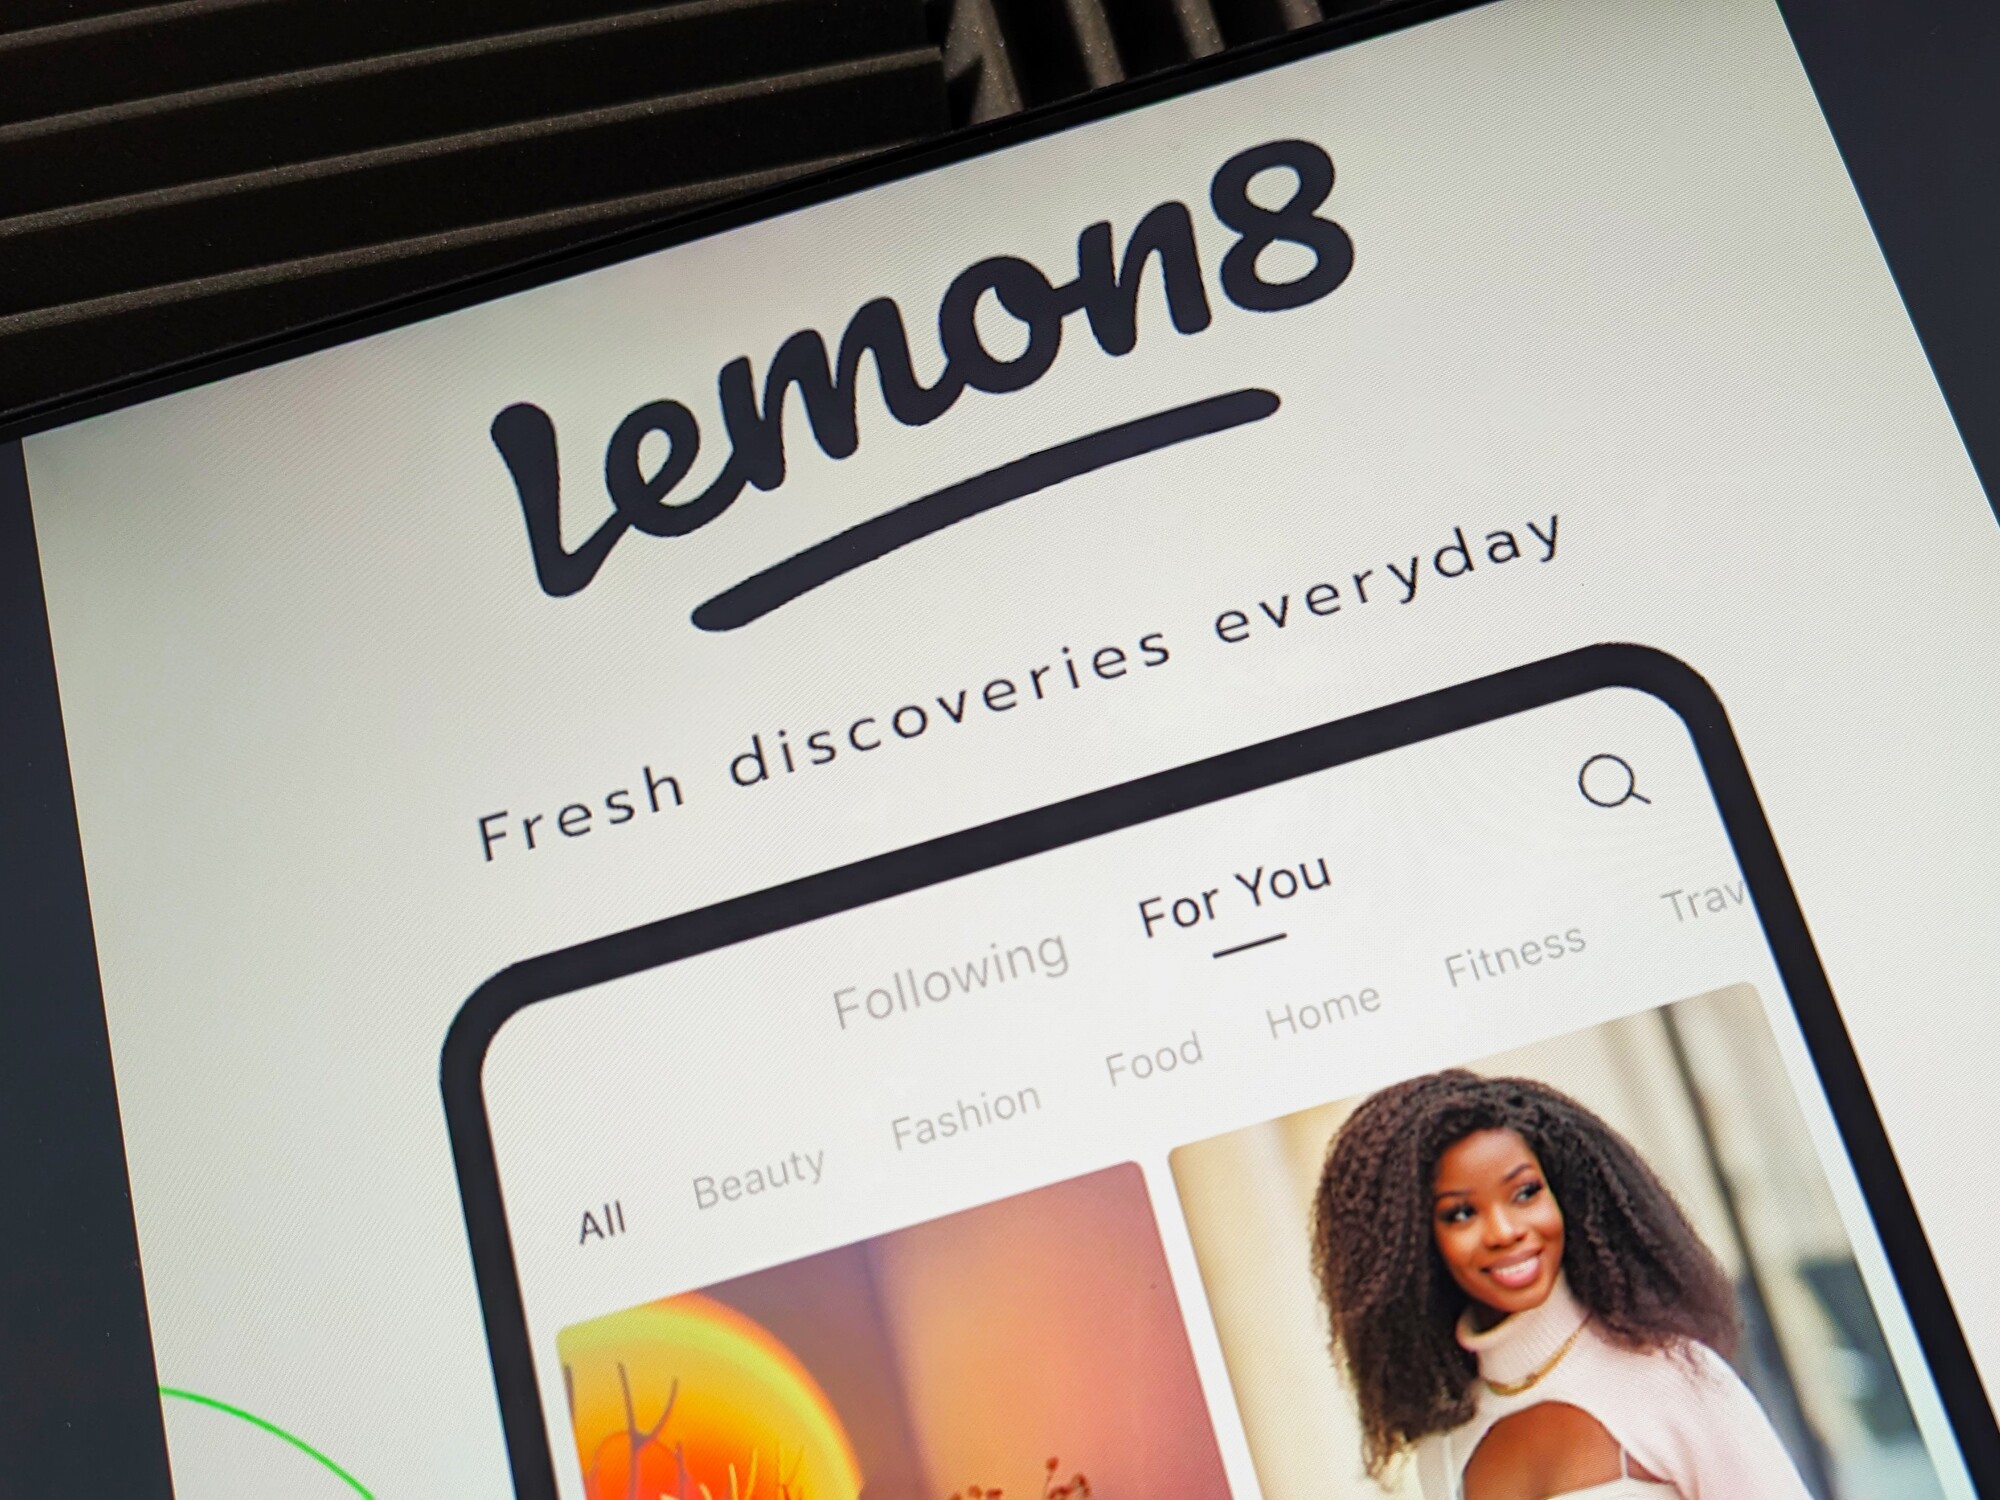 Lemon8 : tout ce qu'on sait de la nouvelle app de ByteDance, maison-mère de TikTok